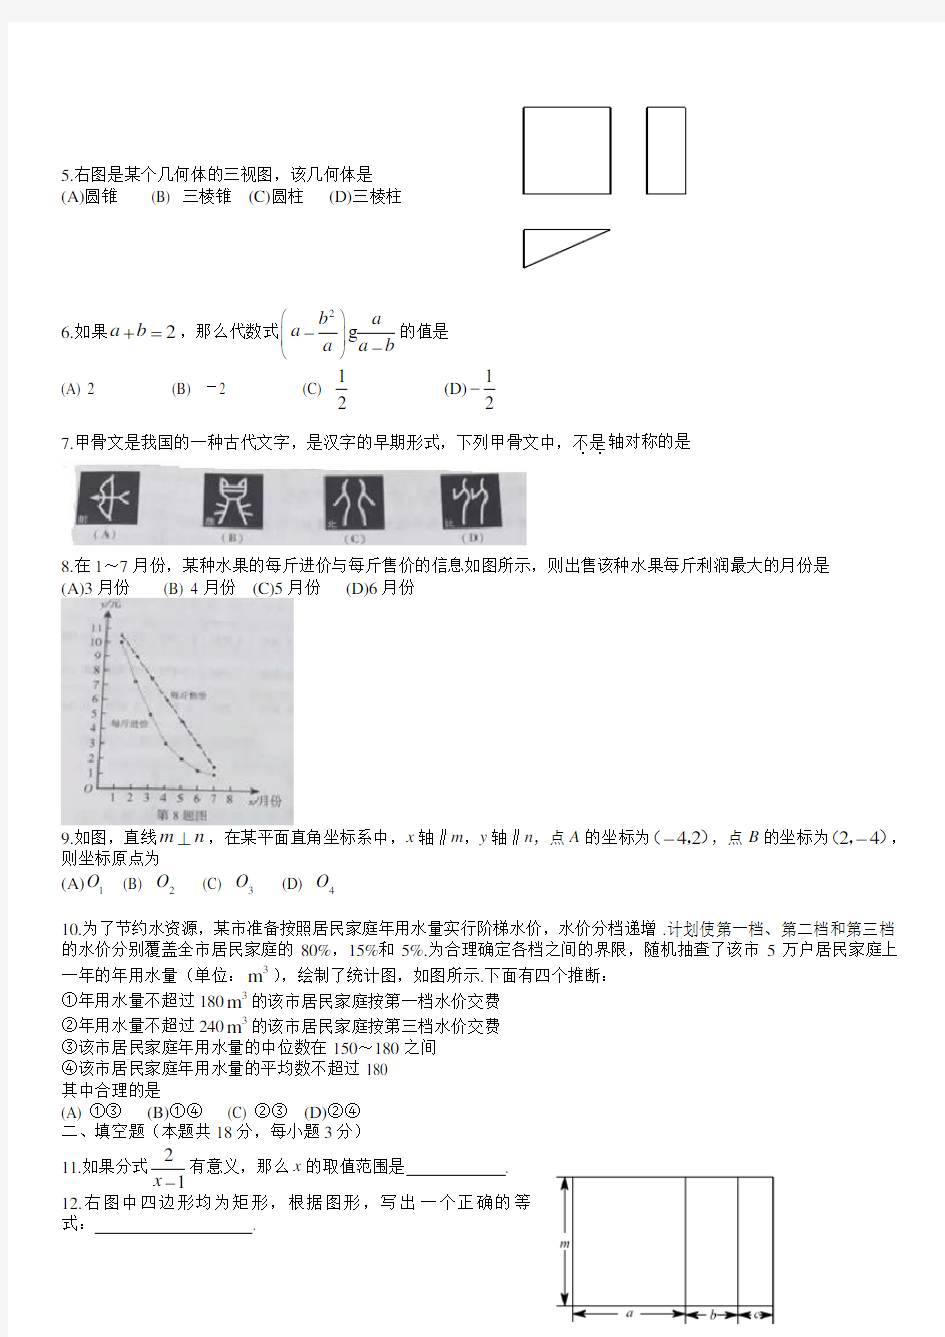 【中考真题】北京市2016年中考数学试卷带参考答案